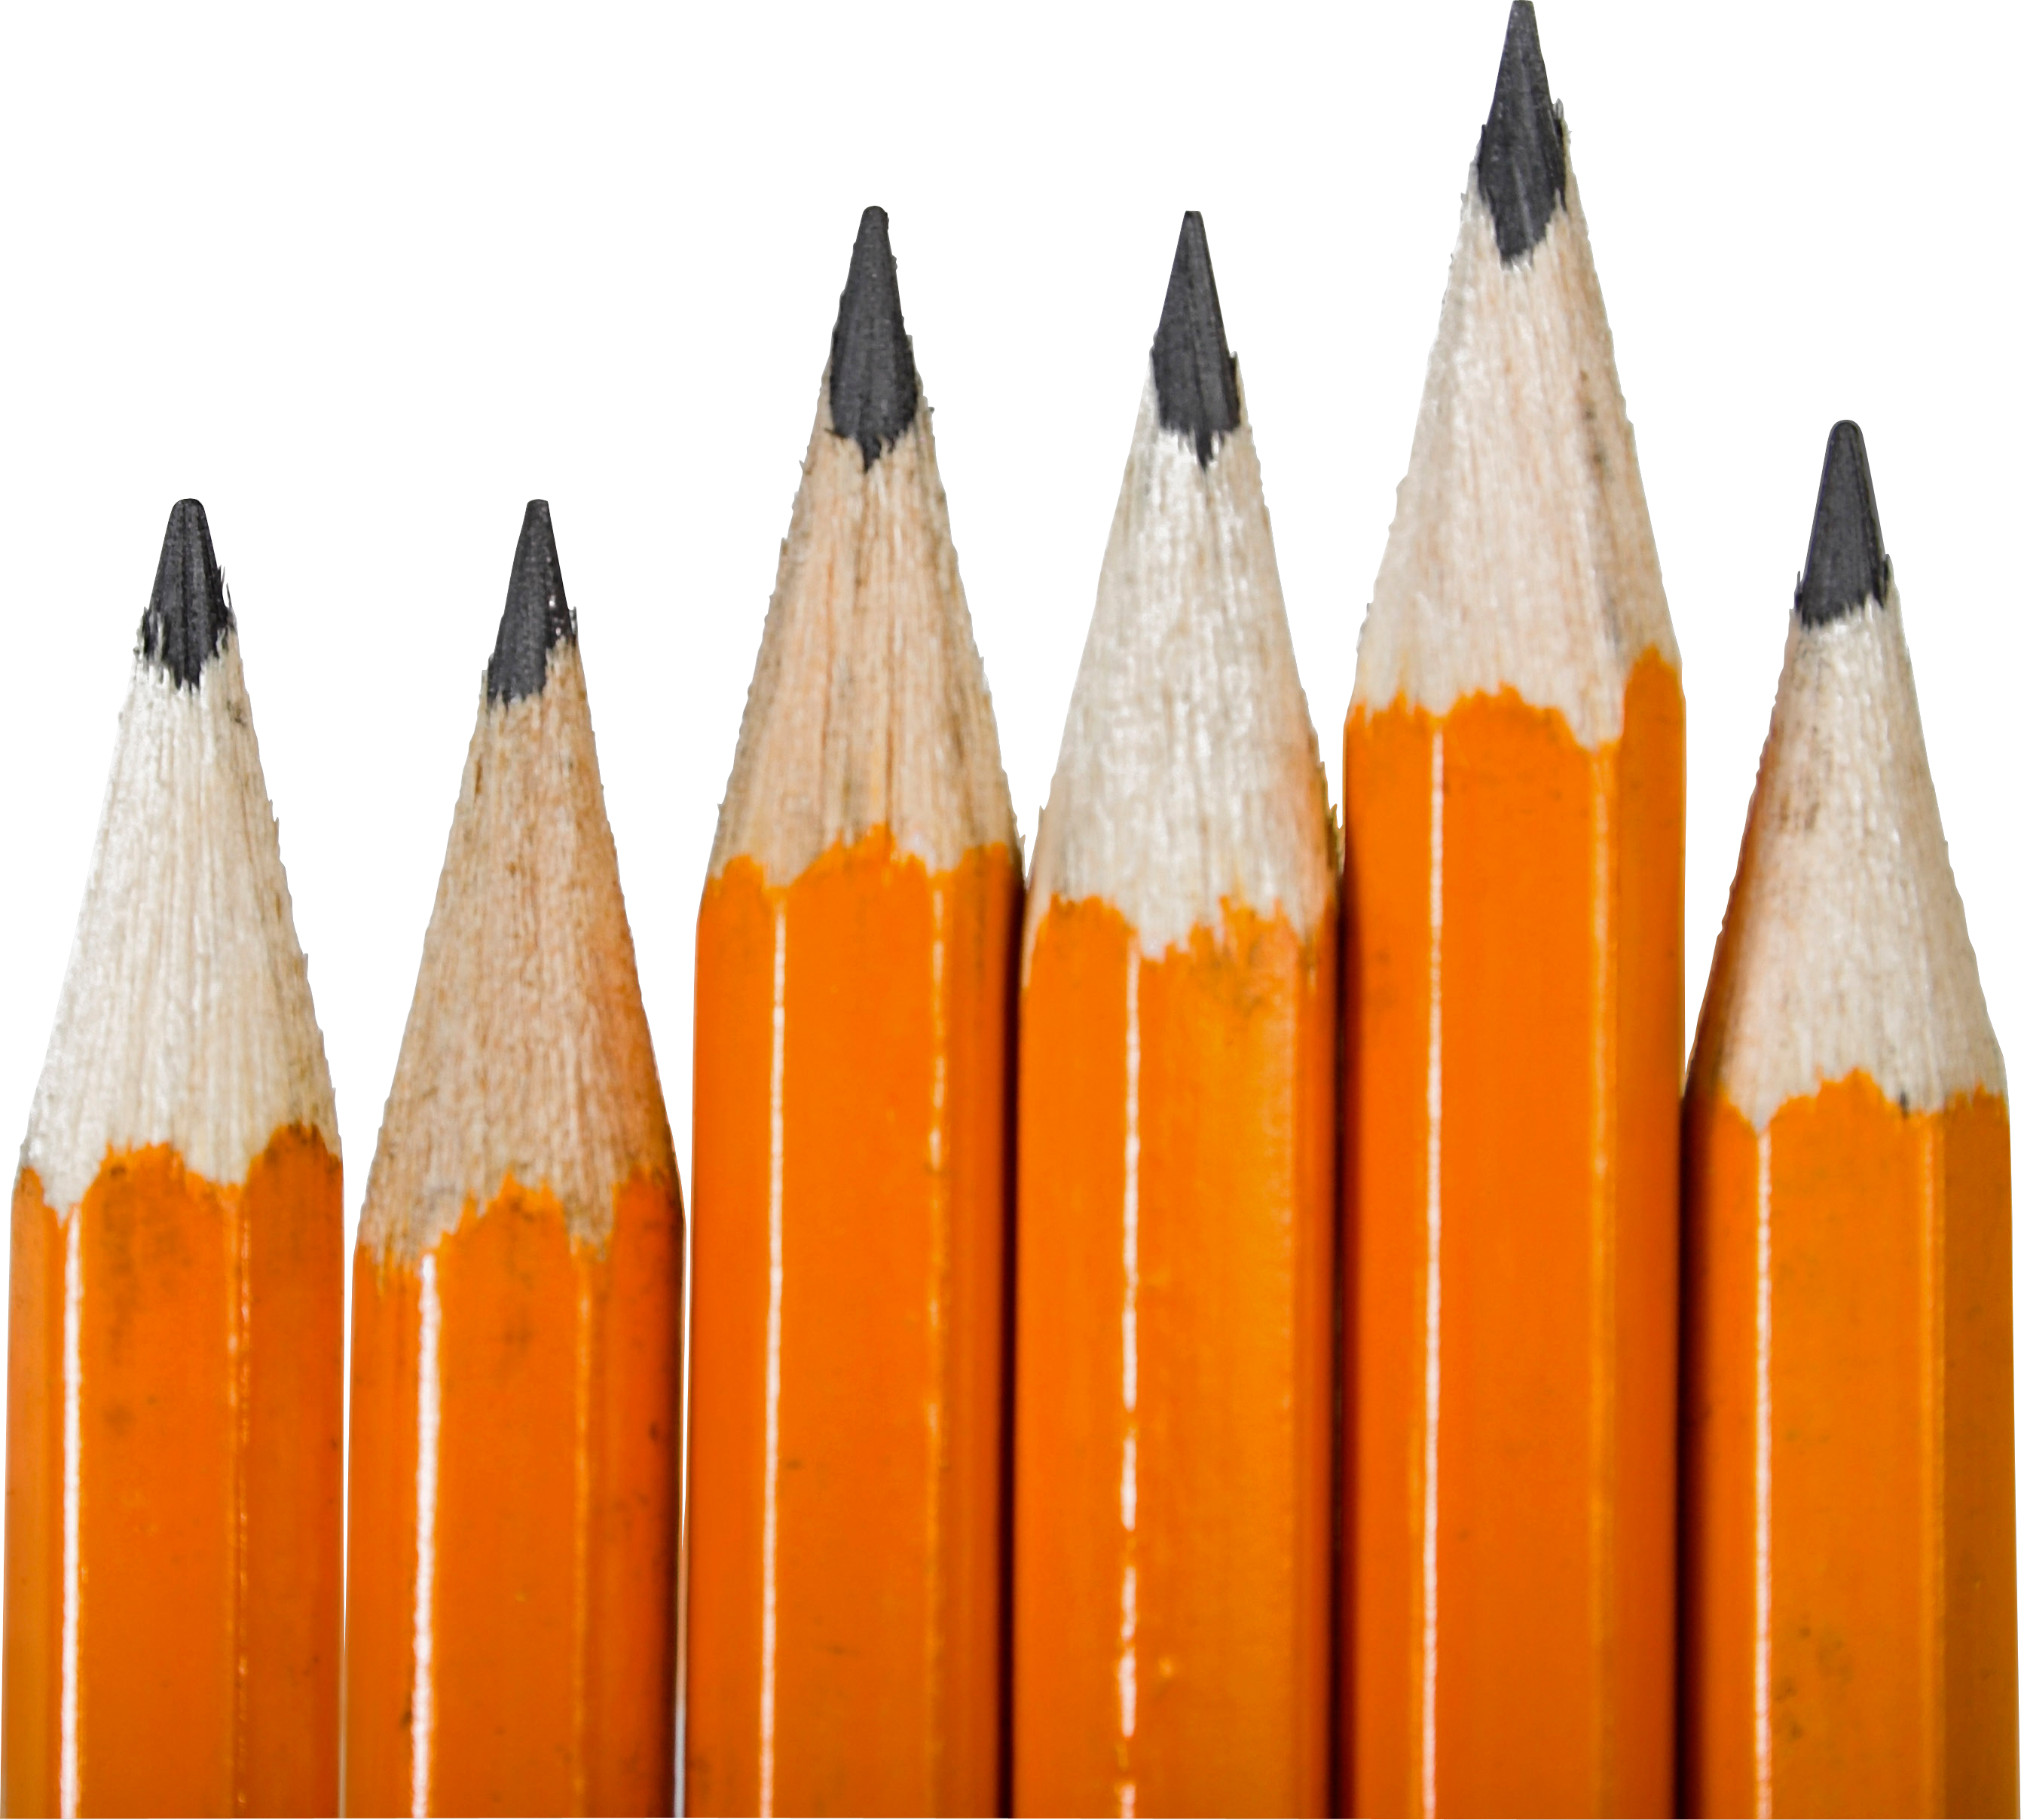 Pencil’s